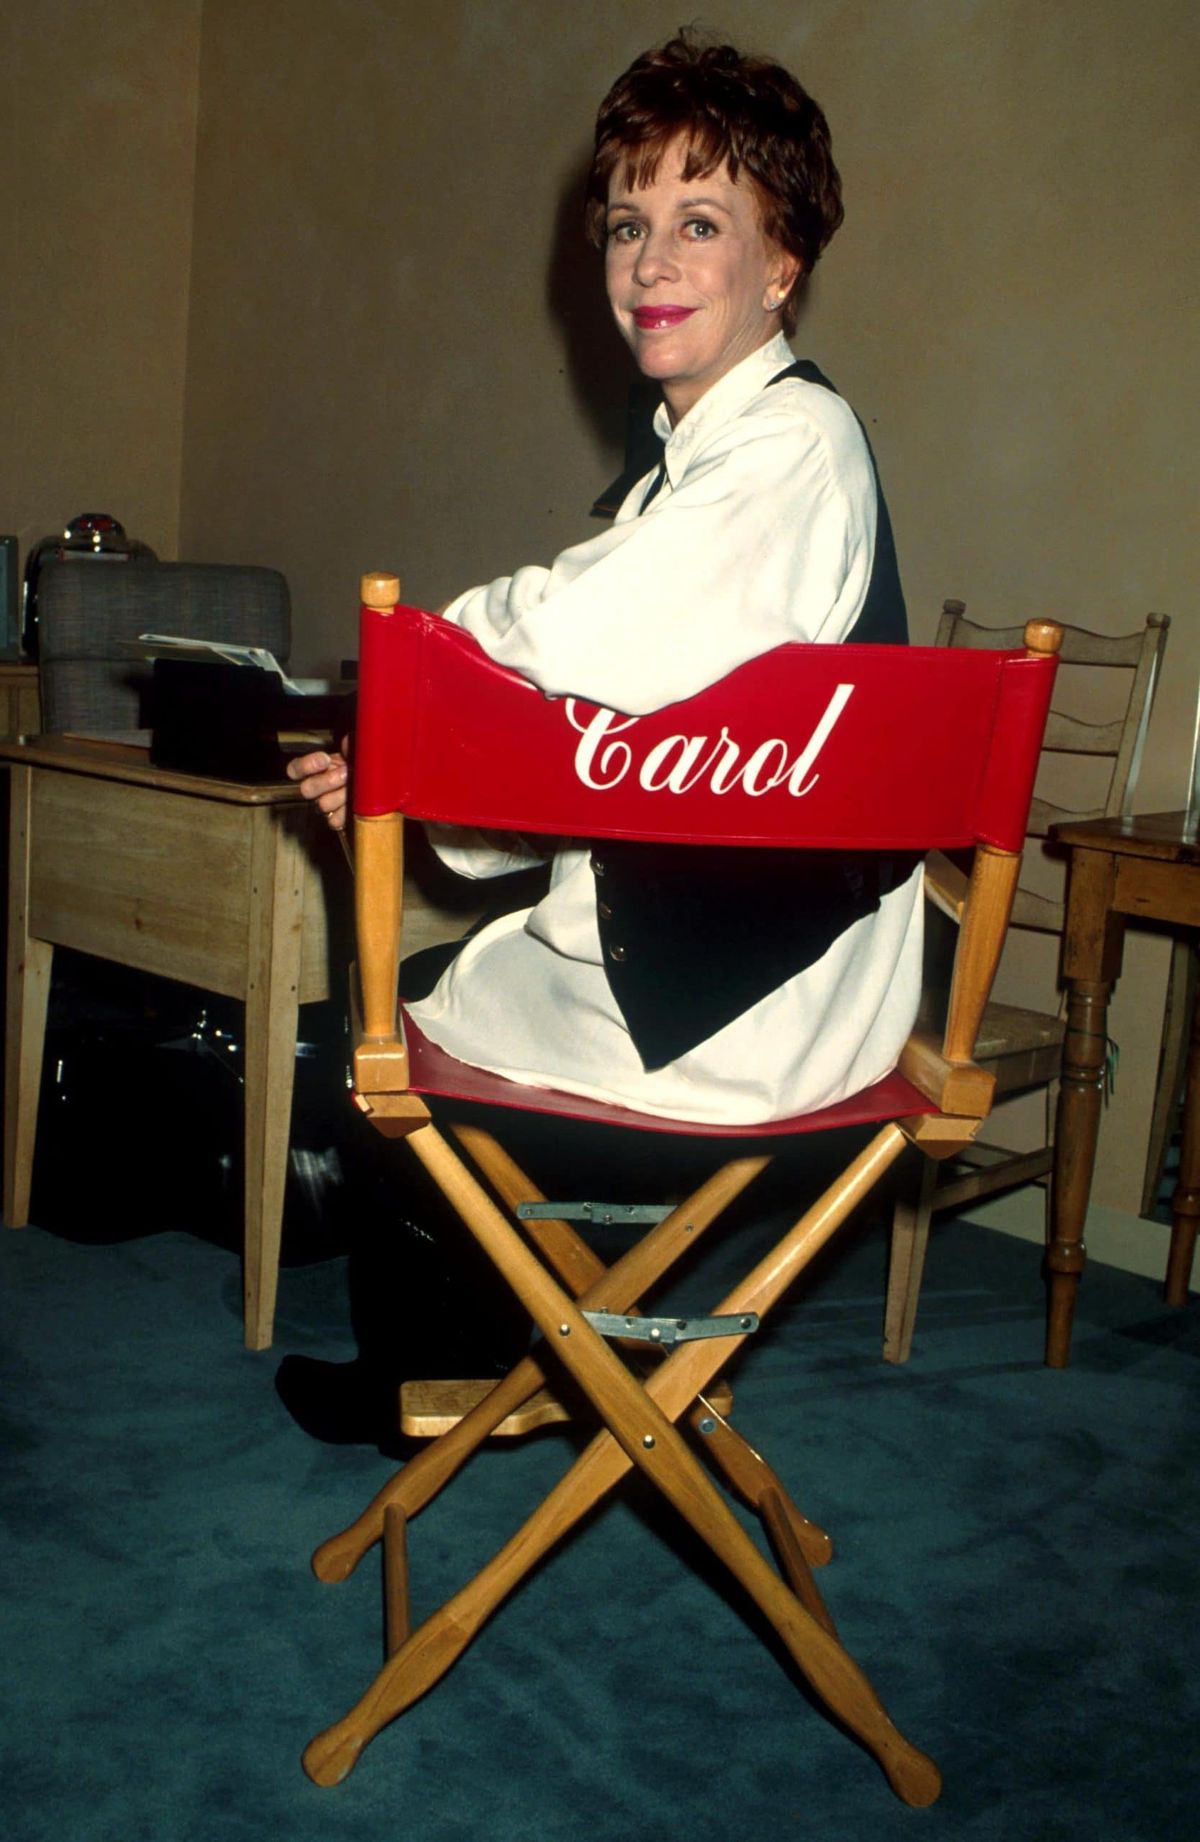 Κάρολ Μπέρνετ που κάθεται σε μια καρέκλα με το όνομά της